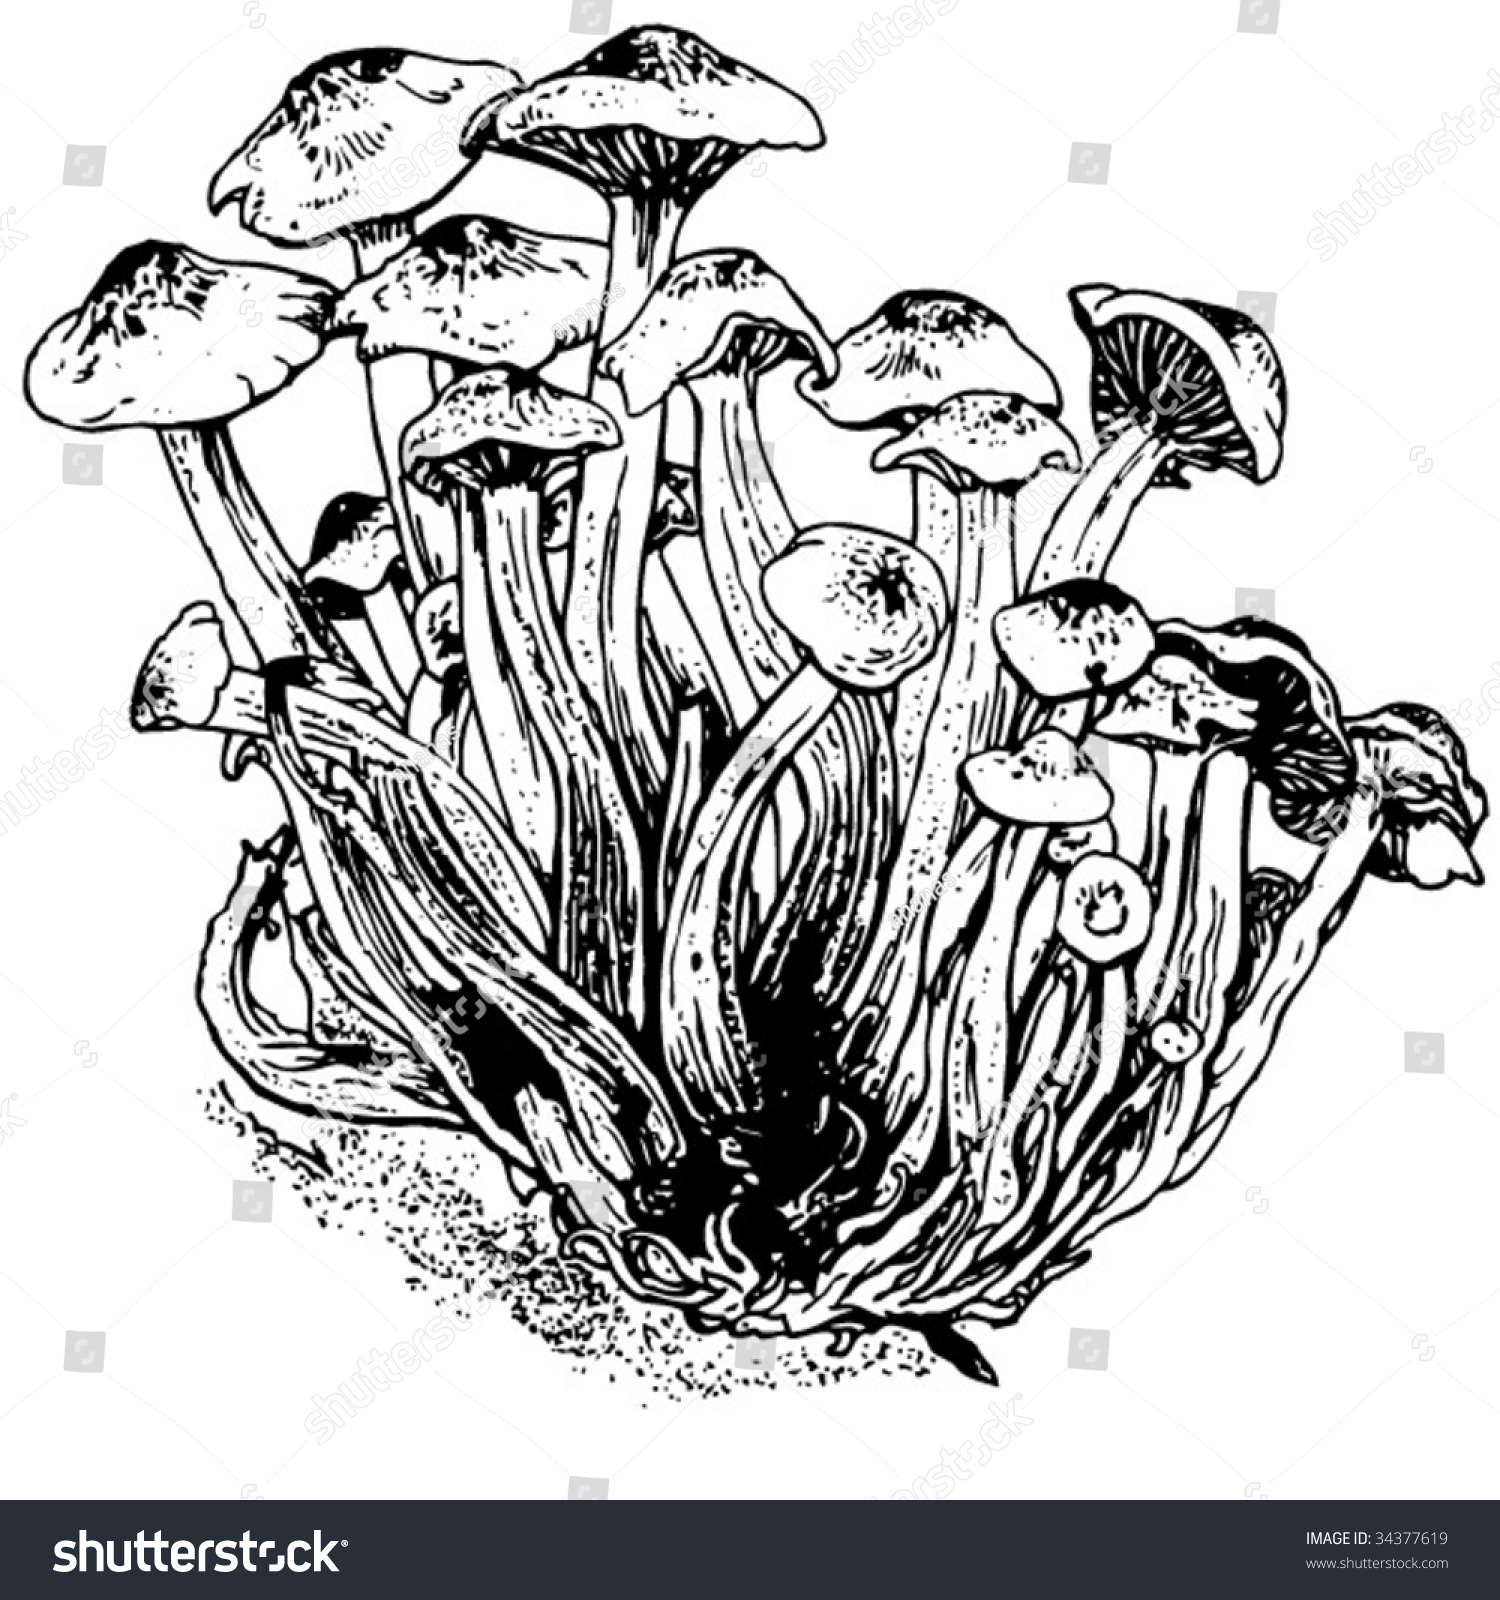 Mushrooms Black White Stock Vector 34377619 - Shutterstock